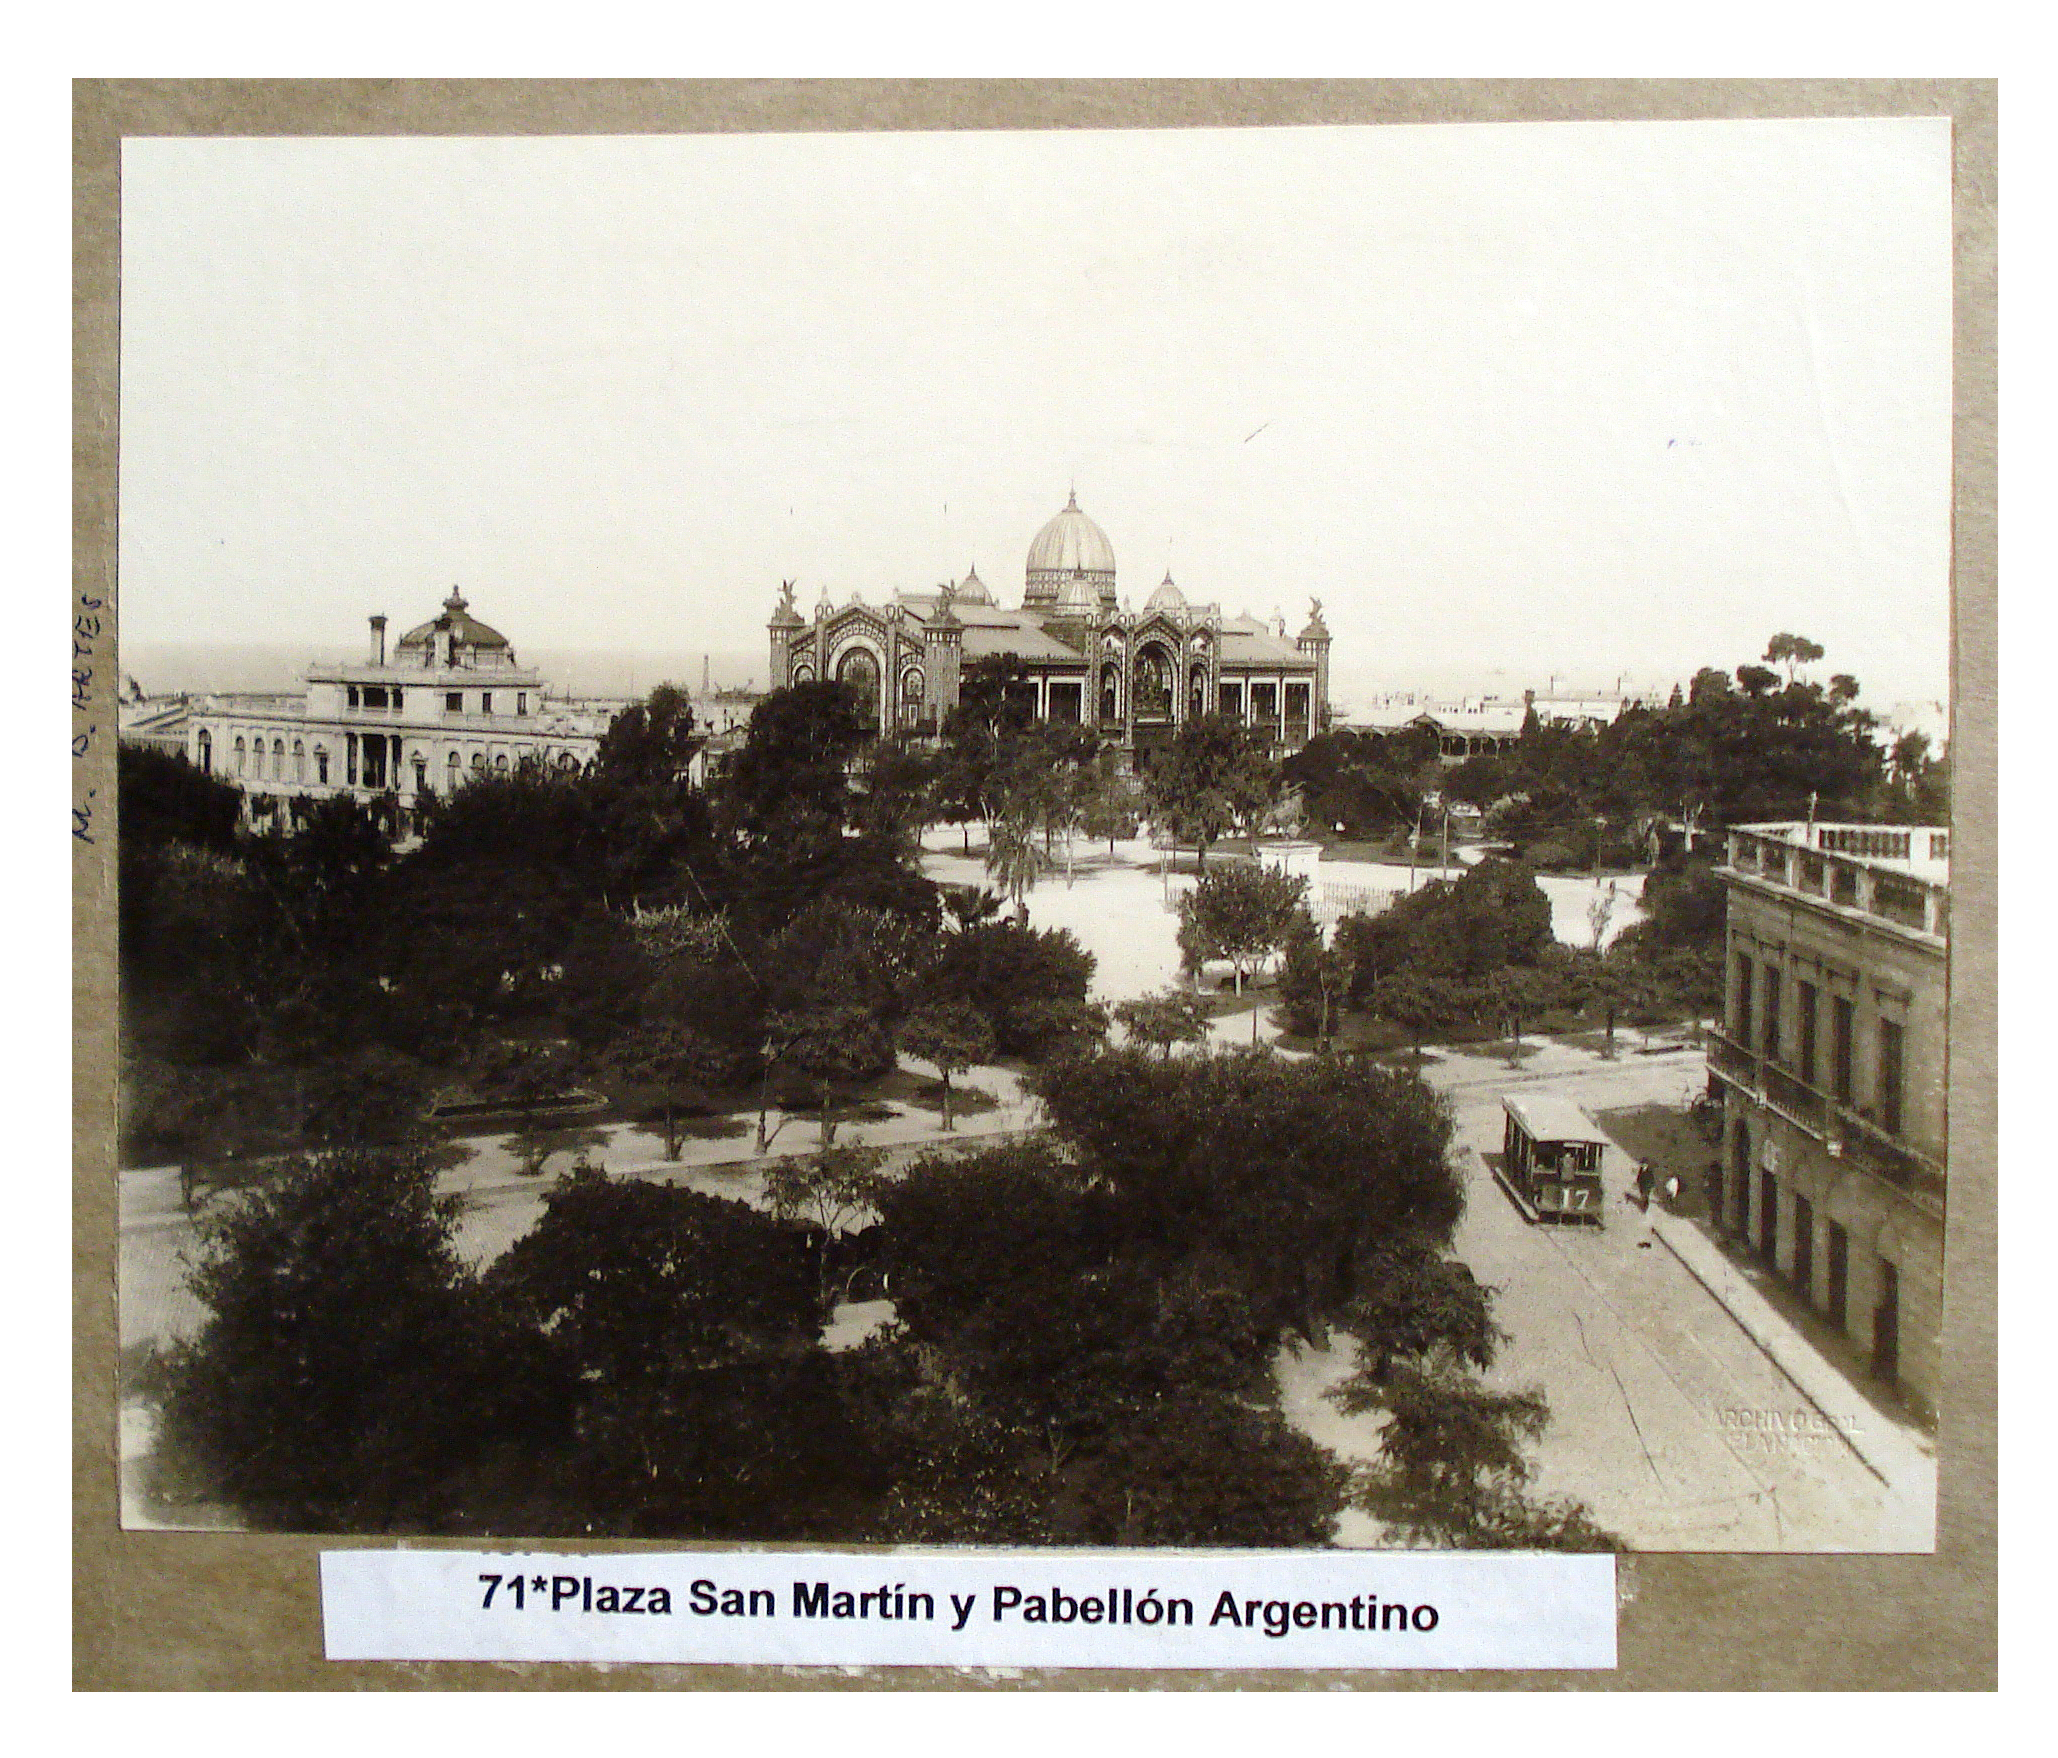 Plaza San Martín y Pabellón Argentino